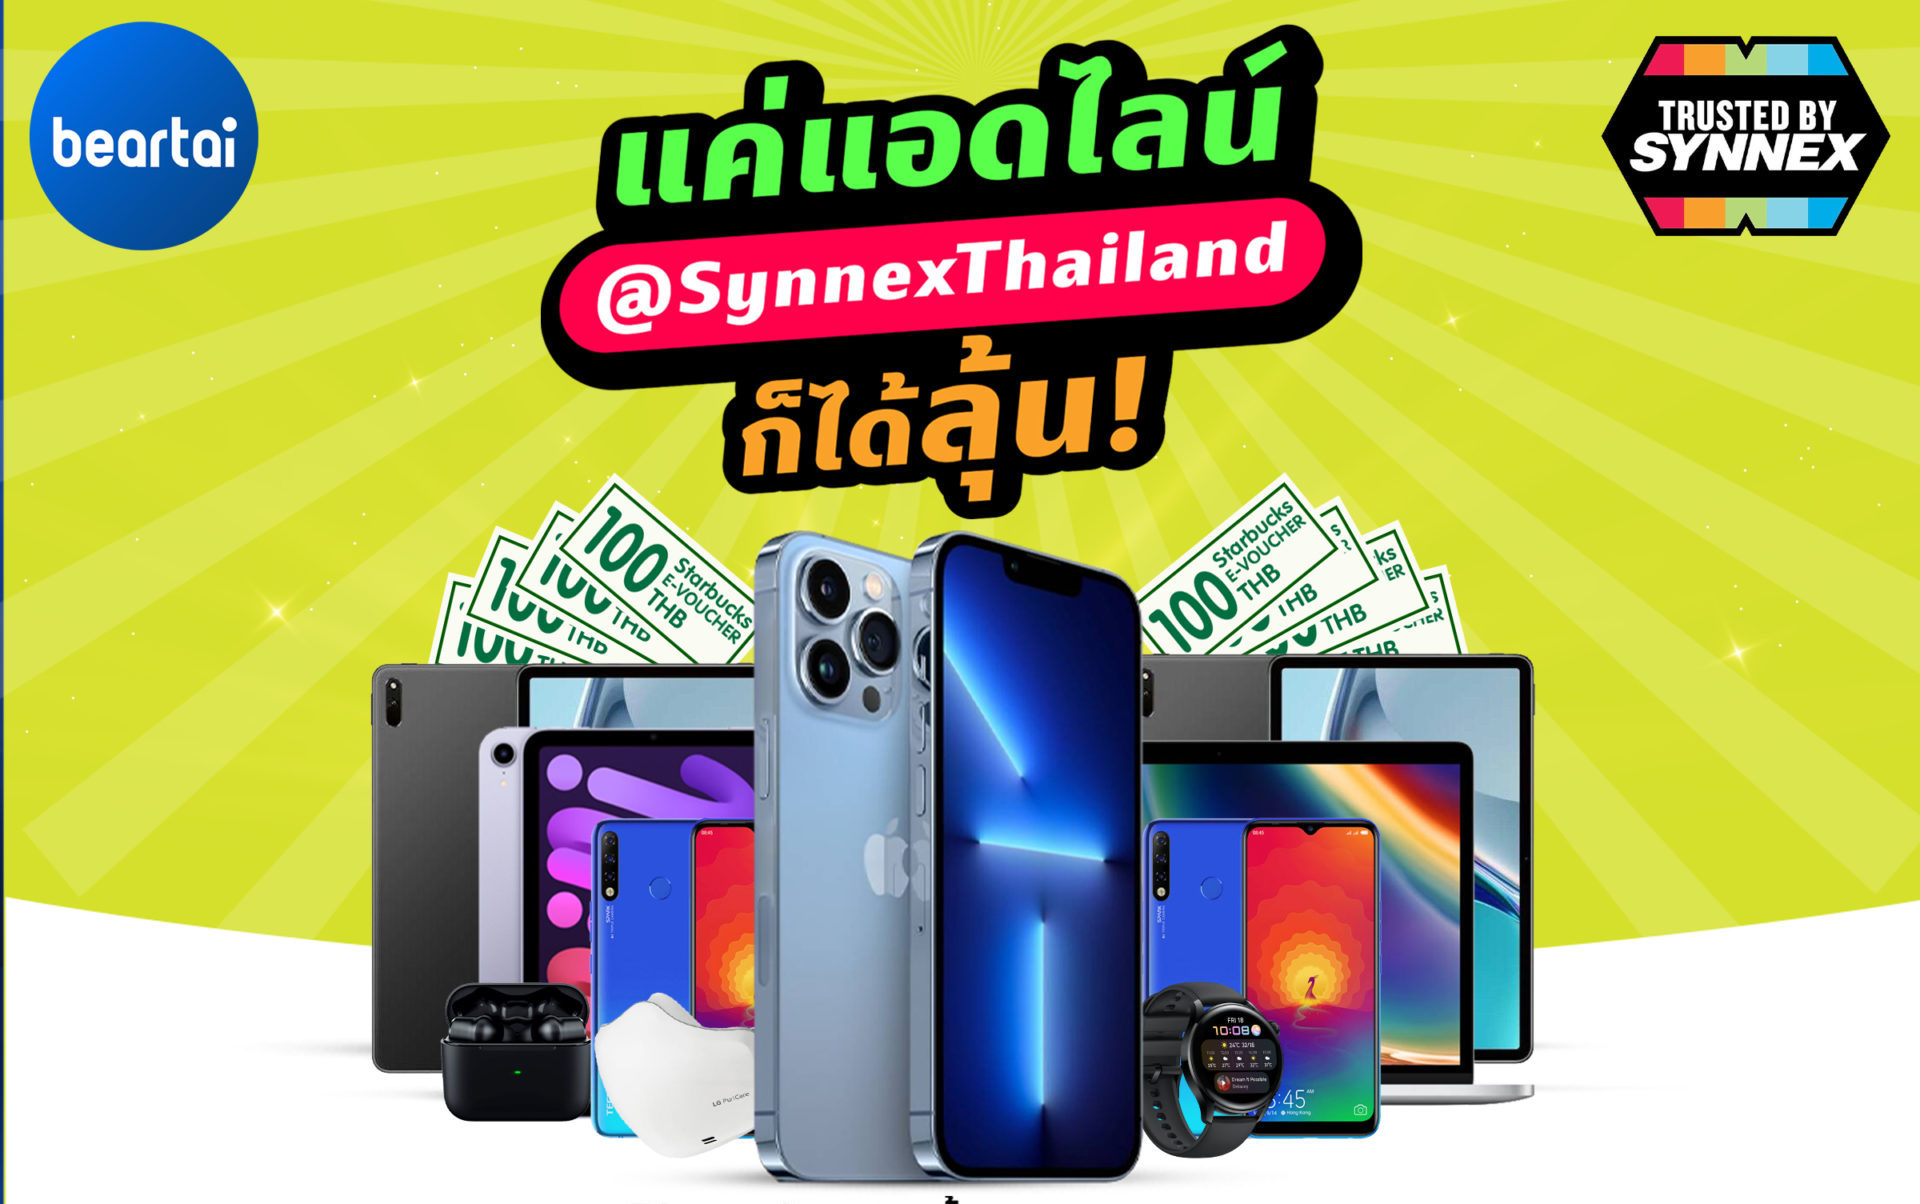 แค่แอดไลน์ ก็ลุ้นรับ iPhone 13 Pro Max และของรางวัลอื่น ๆ รวมมูลค่ากว่า 2 ล้านบาท จาก #Synnex